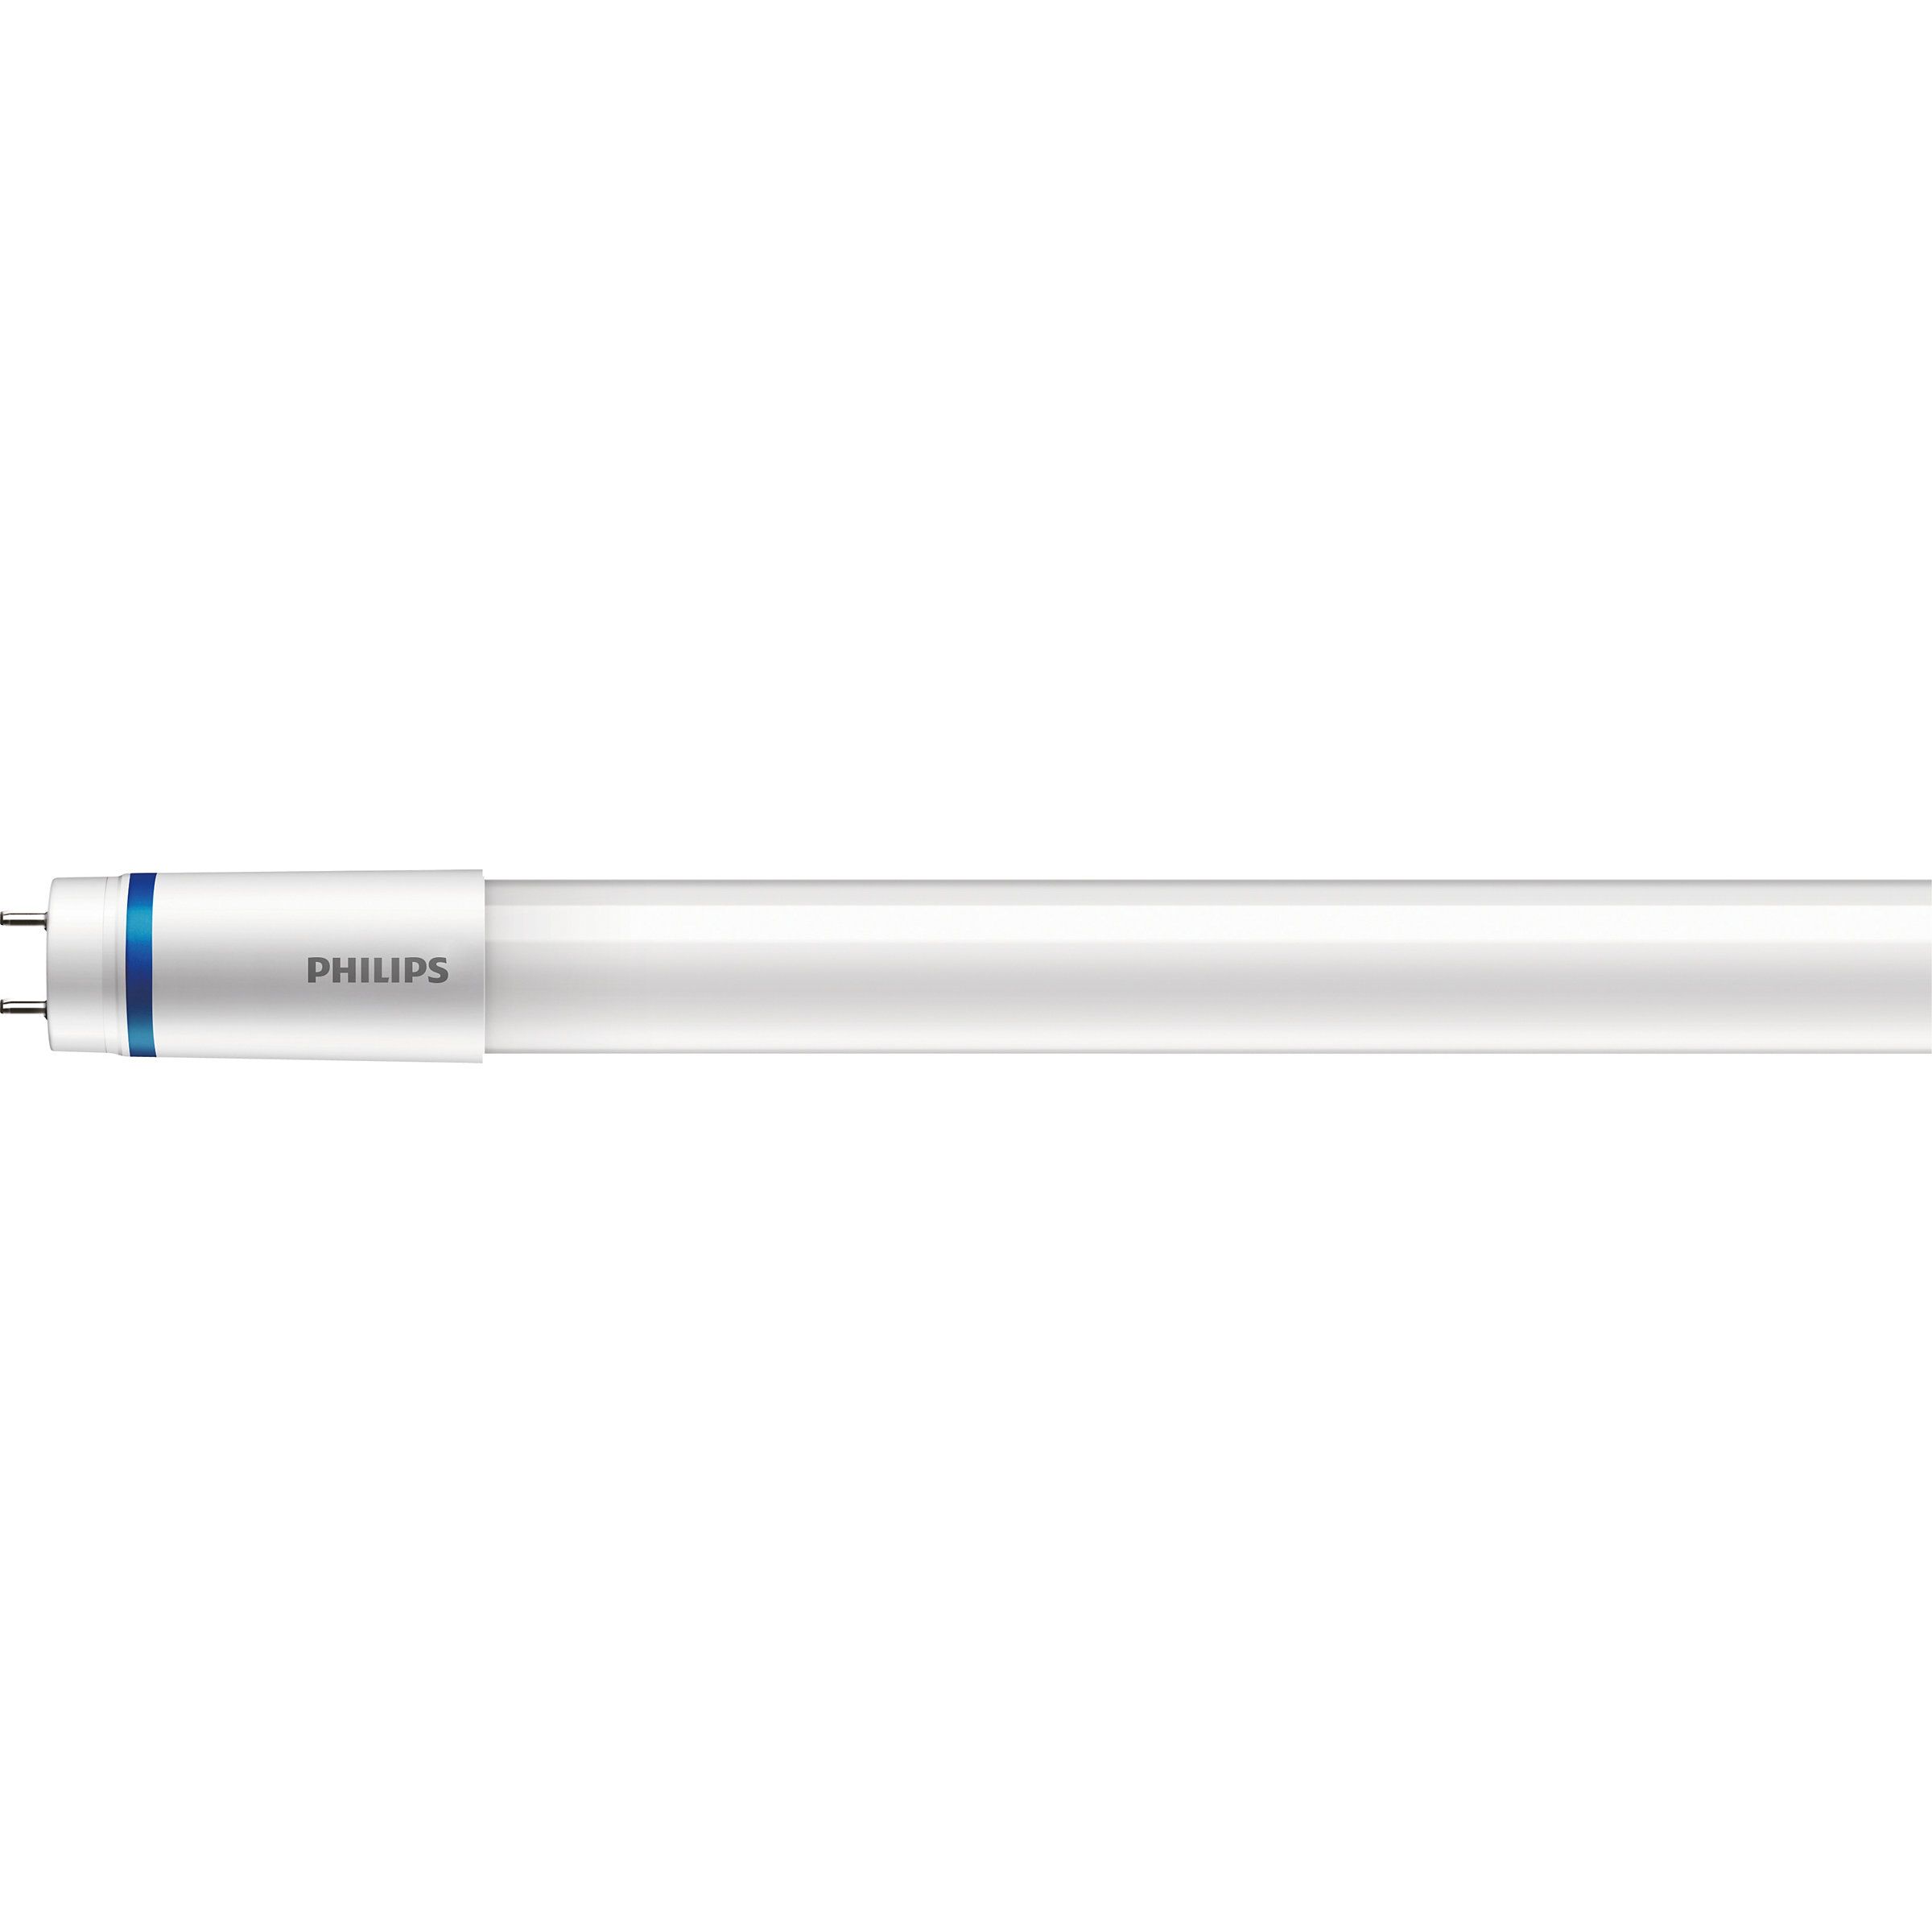 Osram 2x SubstiTUBE T8 LED Starter, LED Röhren ab 1,85 €